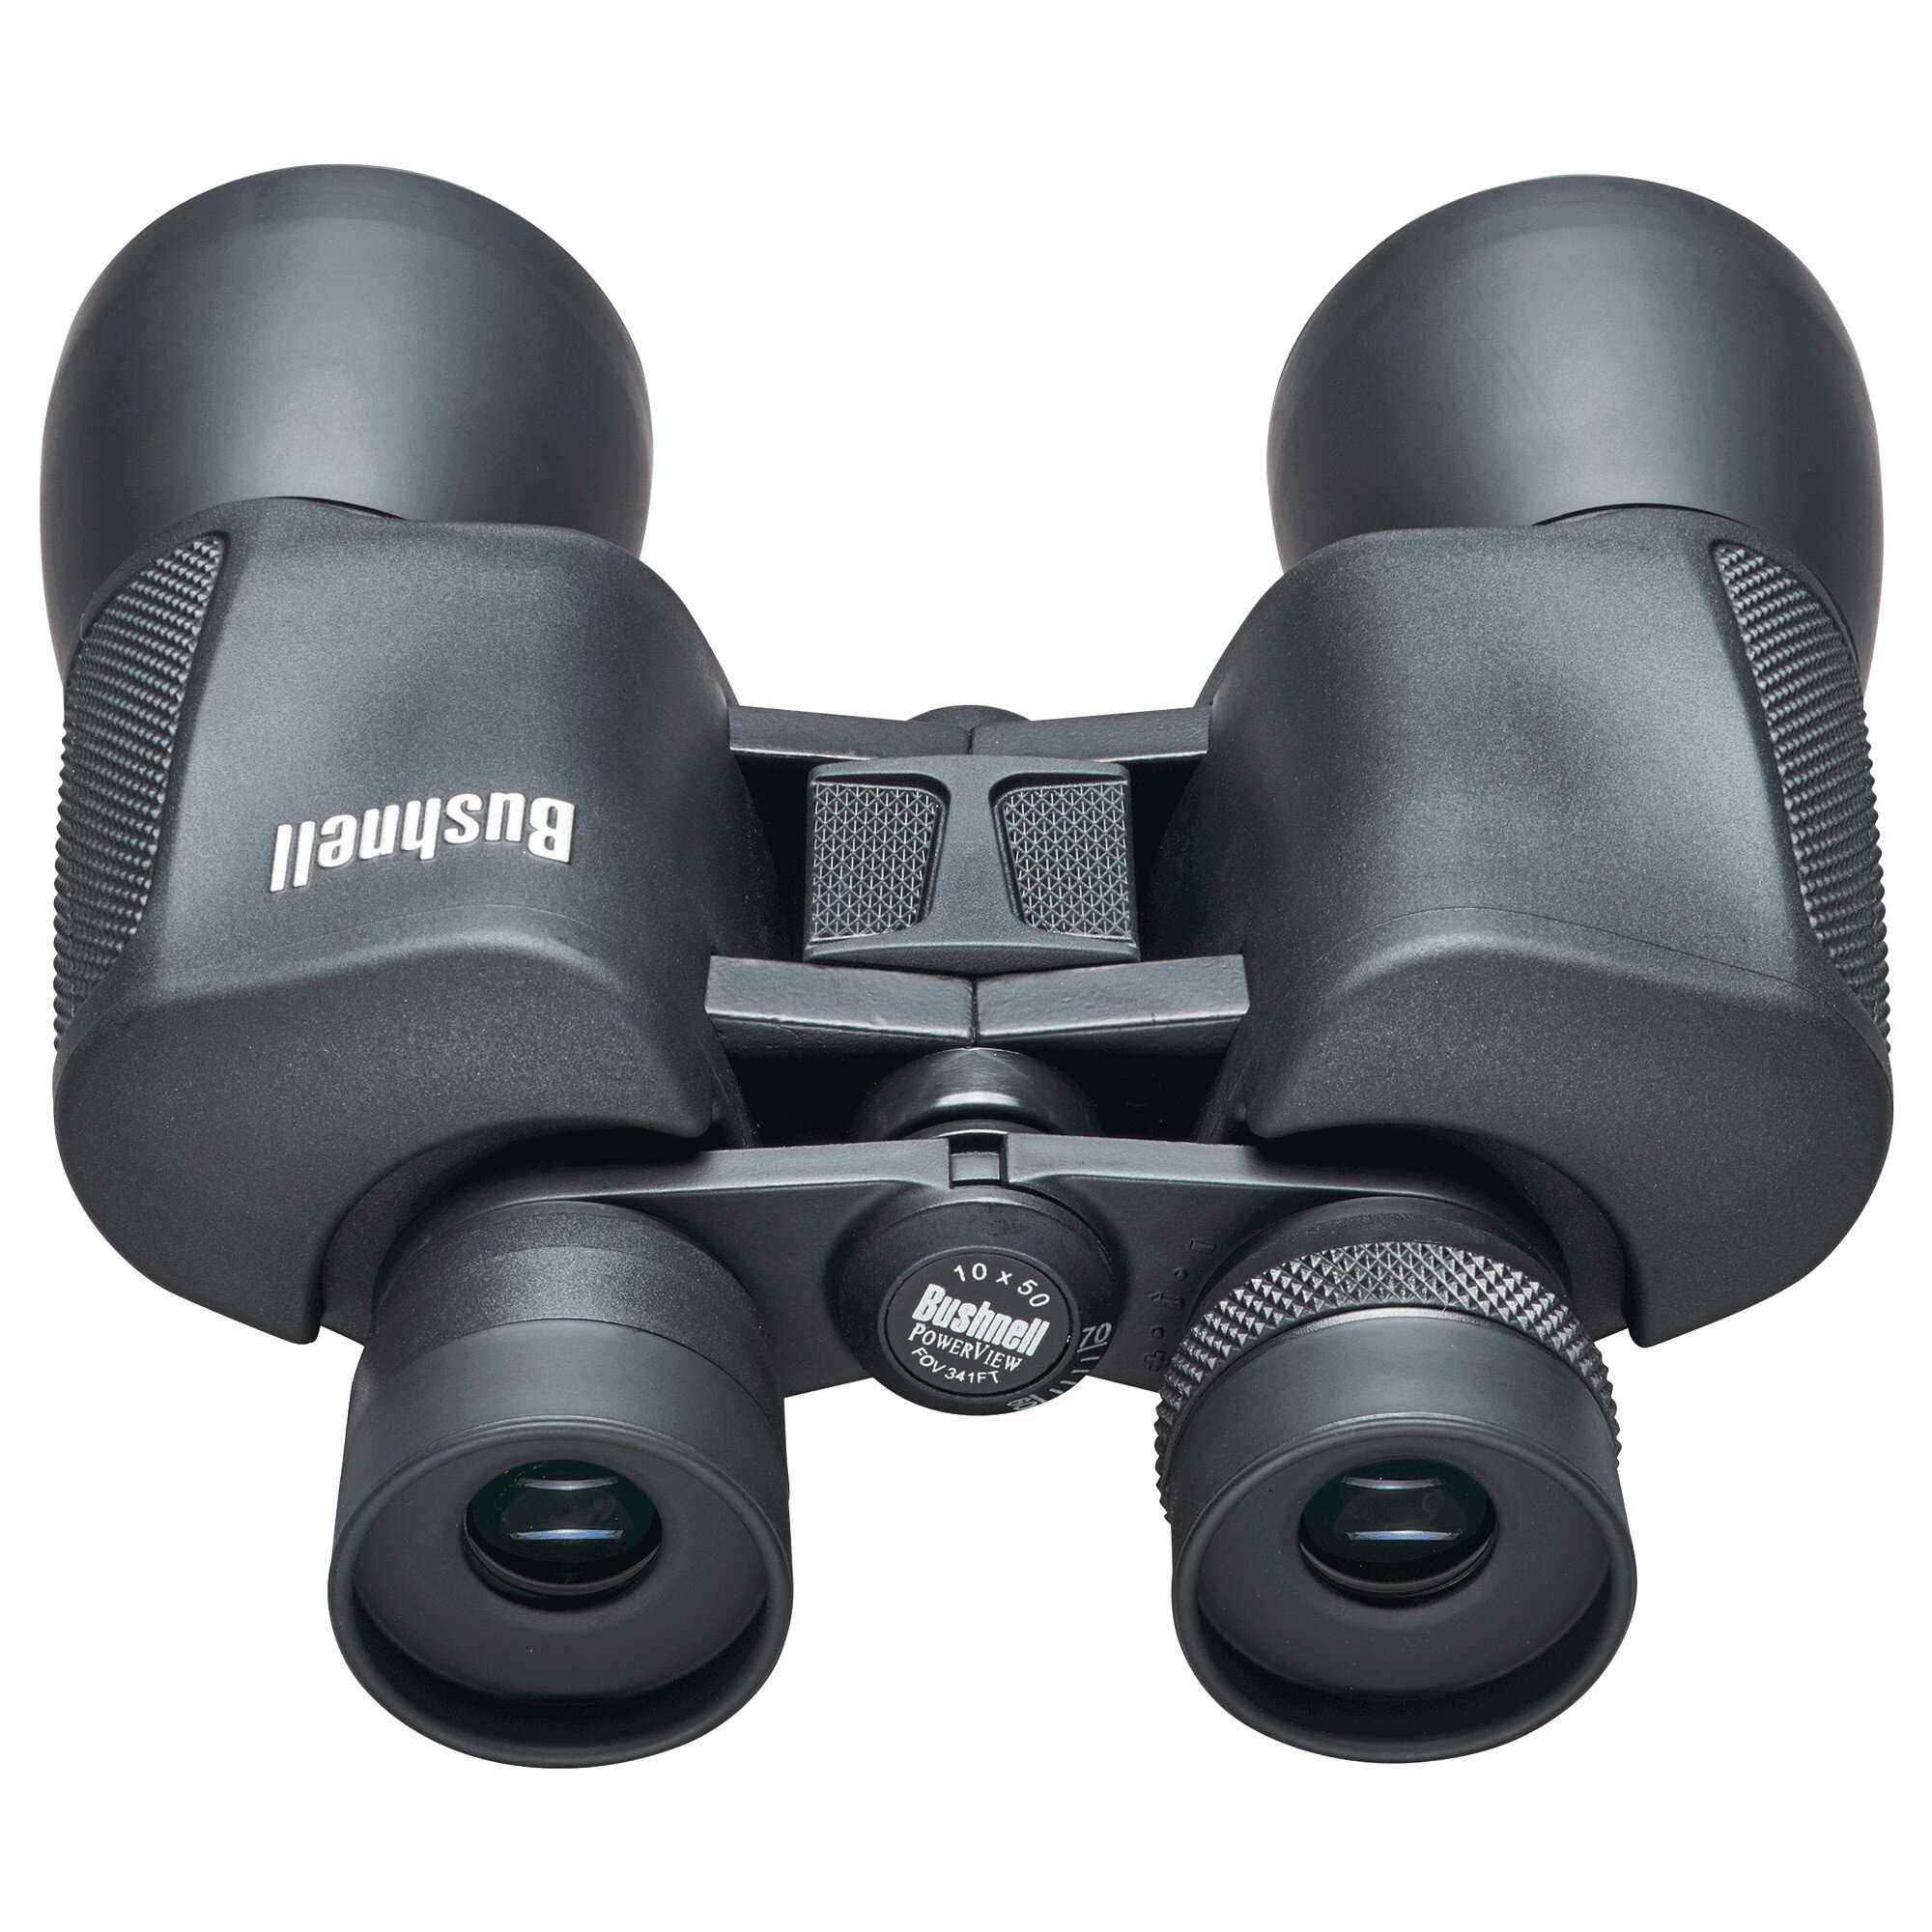 buy-bushnell-powerview-binocular-10x50-black-body-online-in-pakistan